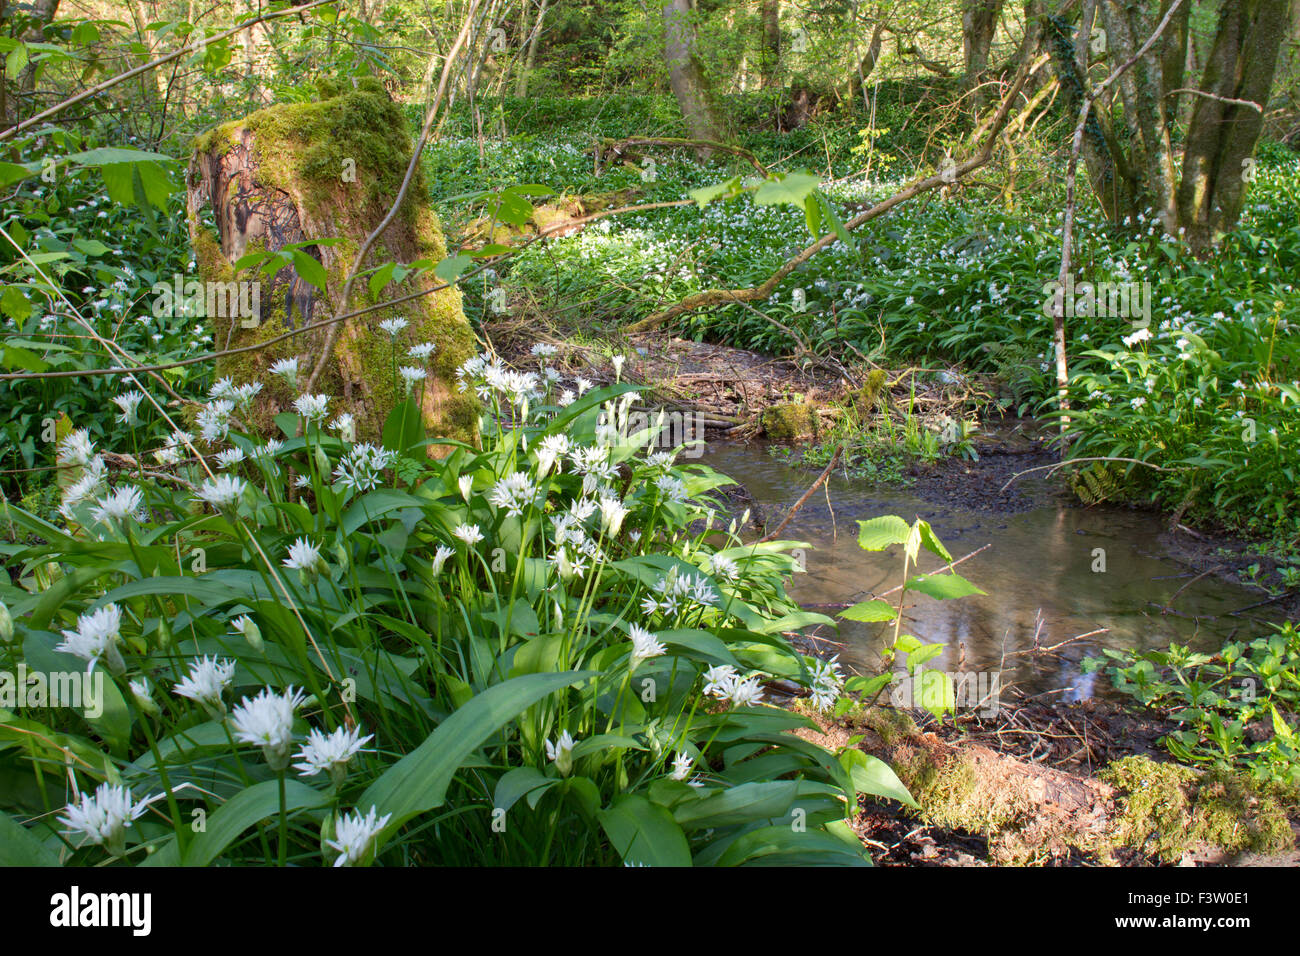 Bärlauch oder Bärlauch (Allium Ursinum) blühen neben einem Waldbach. Powys, Wales. Mai. Stockfoto